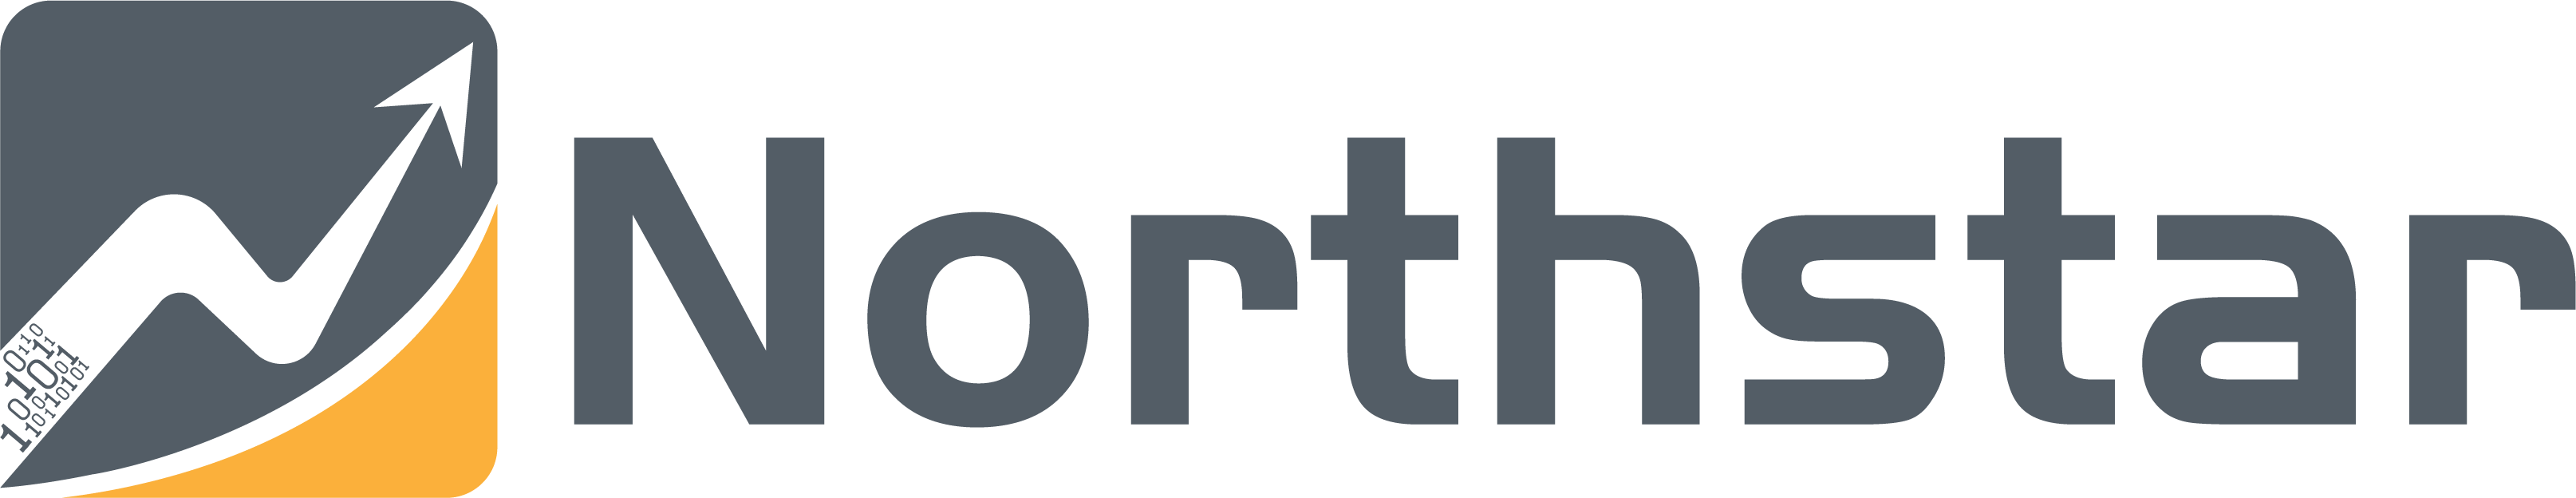 Northstar盈富量化交易平台